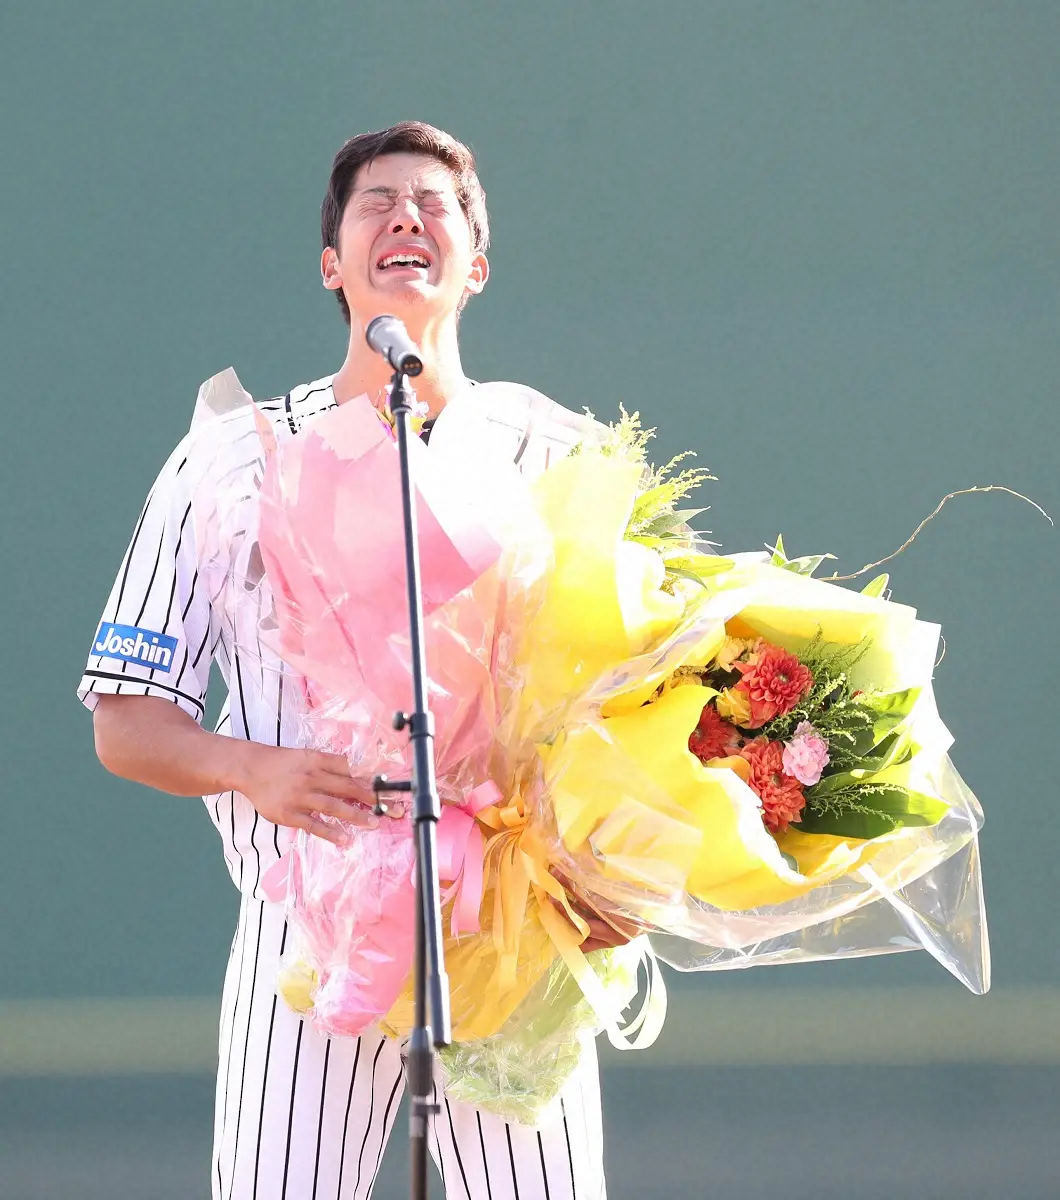 2019年、ウエスタン・リーグのソフトバンク戦で行われた引退セレモニーで涙を流しプロ野球選手に別れを告げた横田慎太郎氏